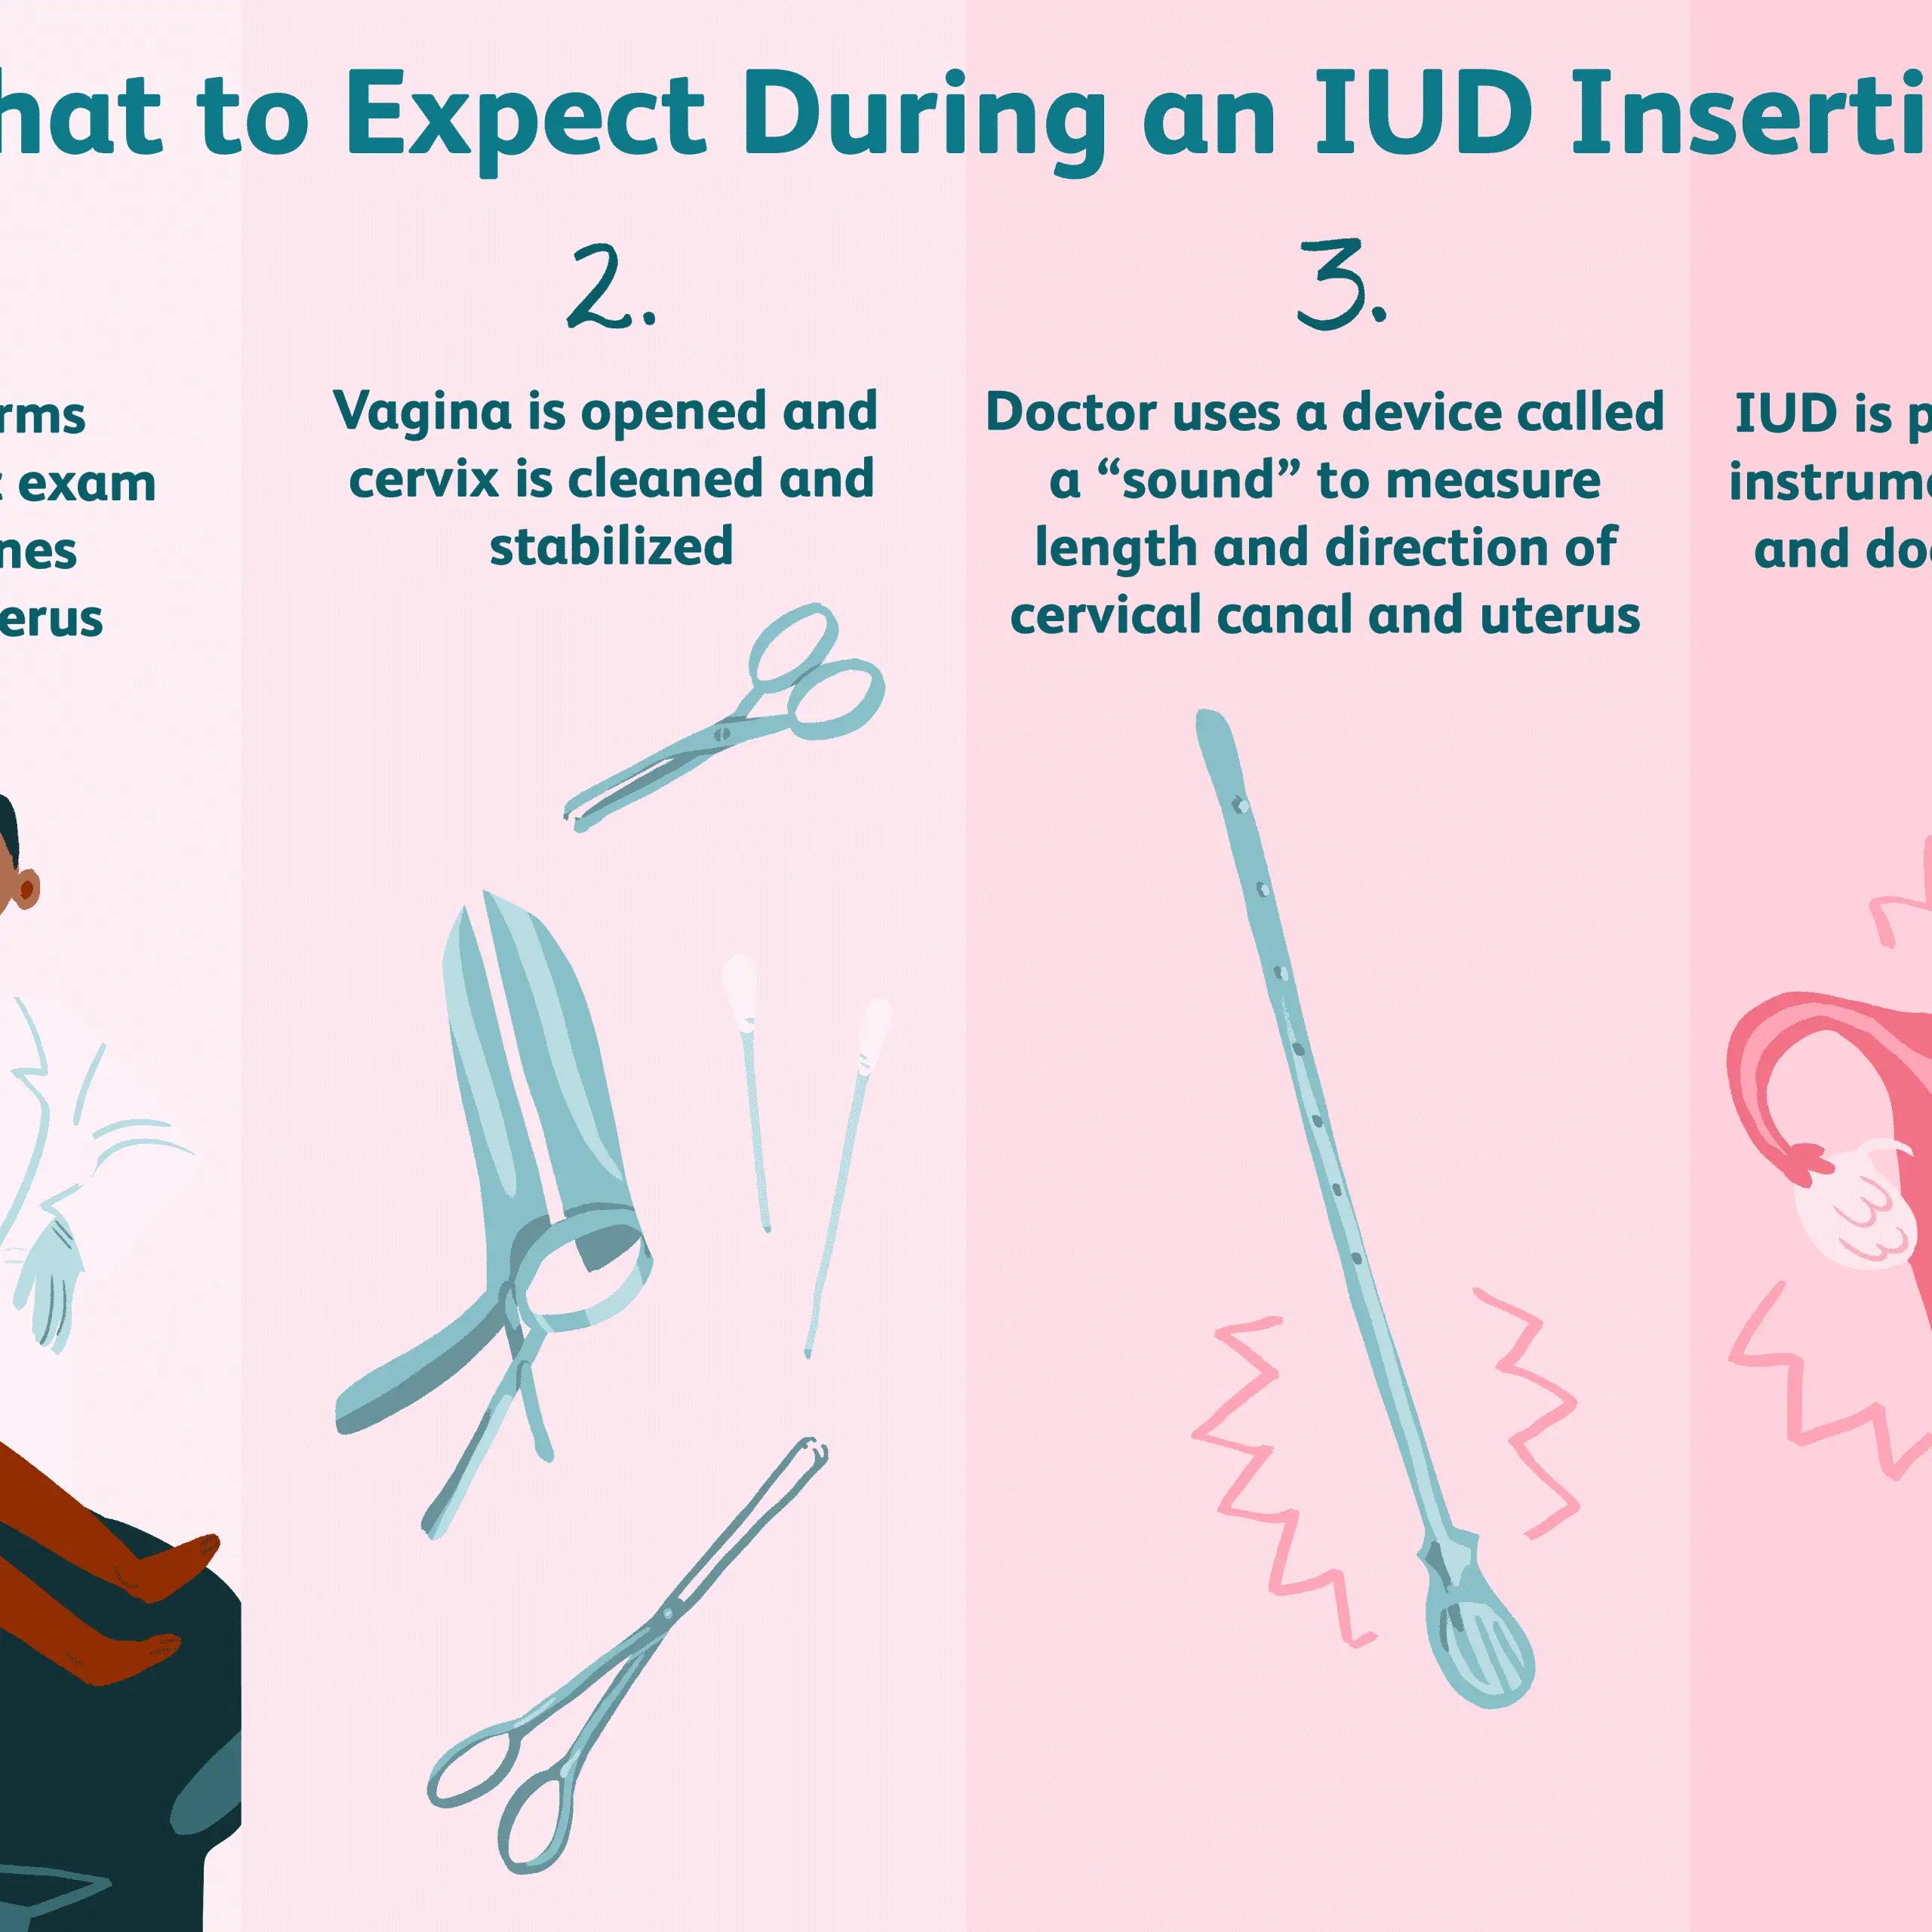 Iud Insertion Device : Intrauterine Contraception Hormonal Iud Copper ...